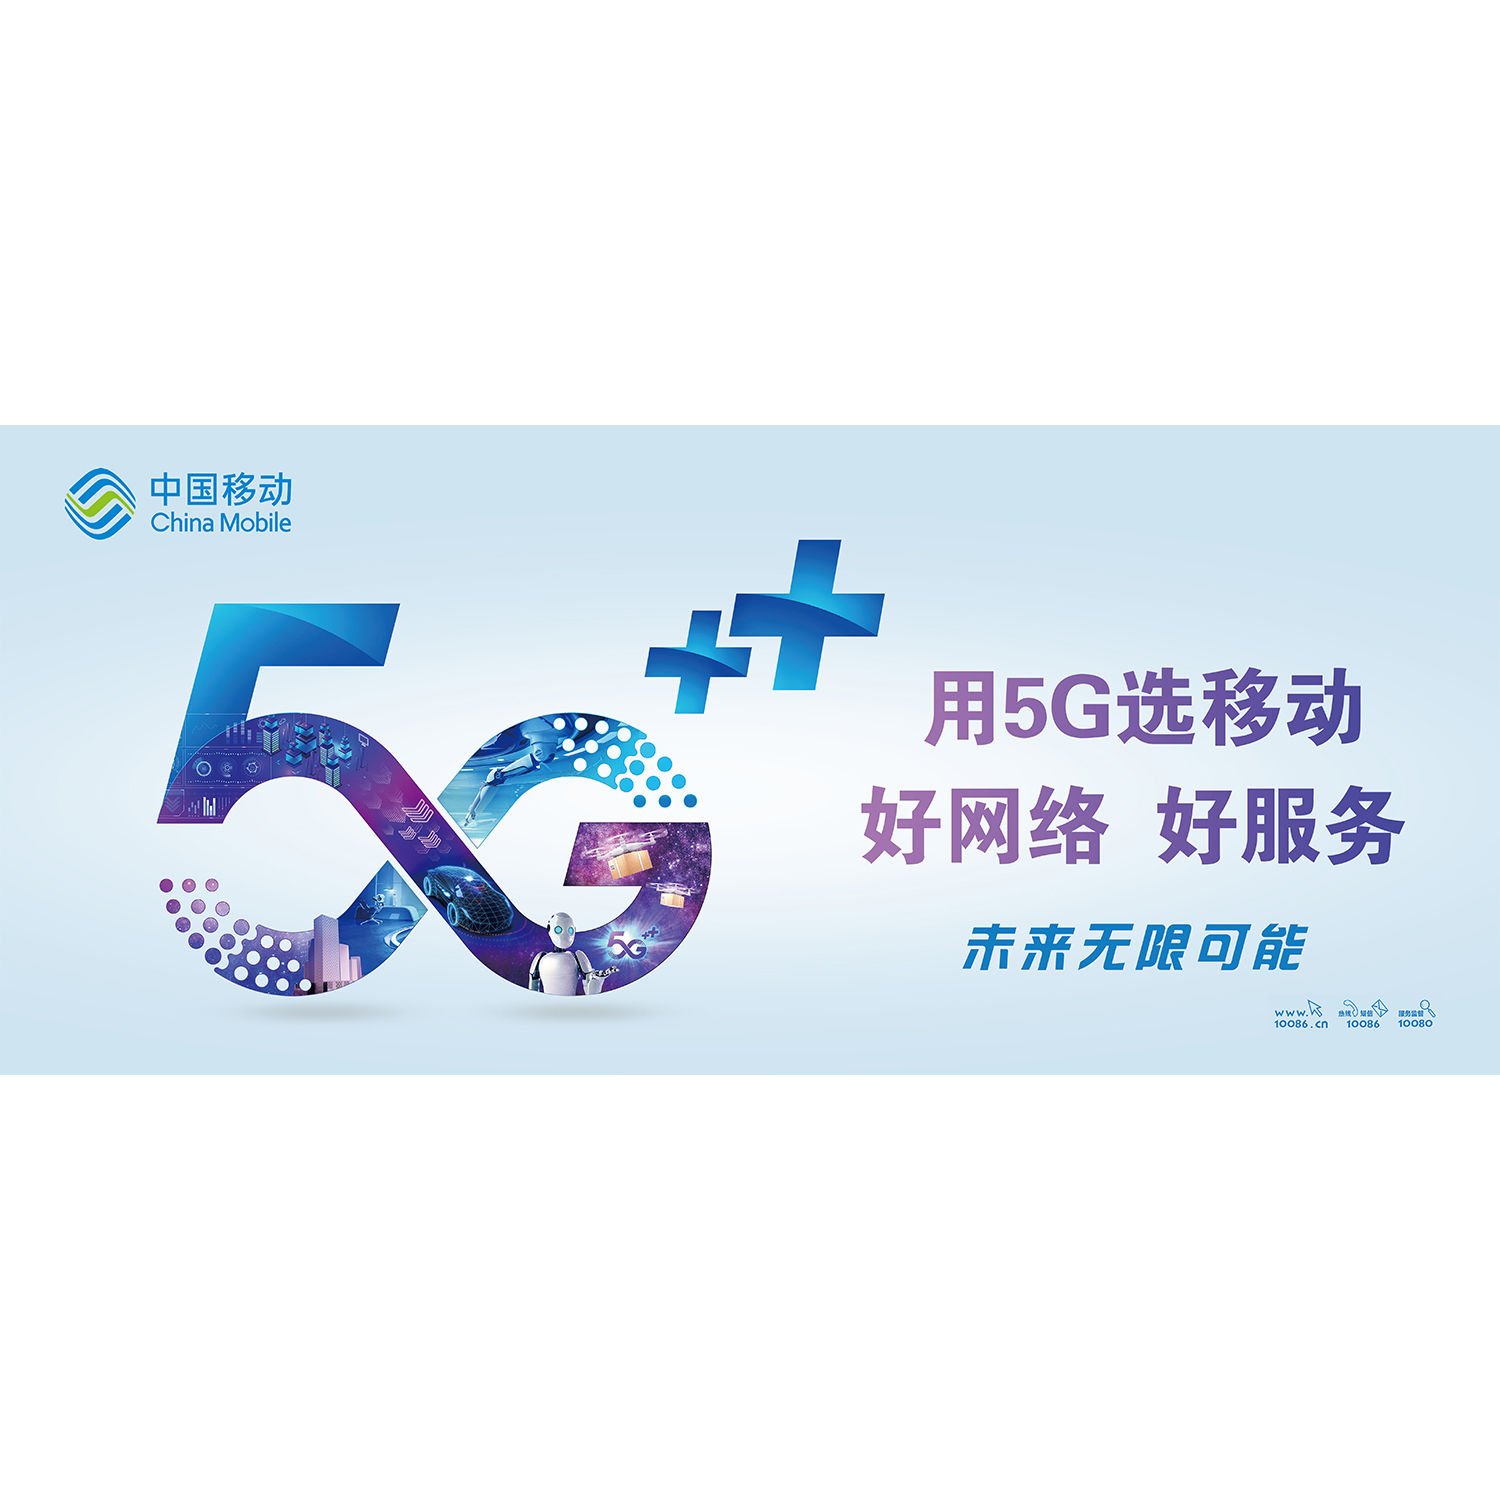 手机店宣传海报中国移动5G时代海报装饰画墙贴纸背胶自粘贴纸